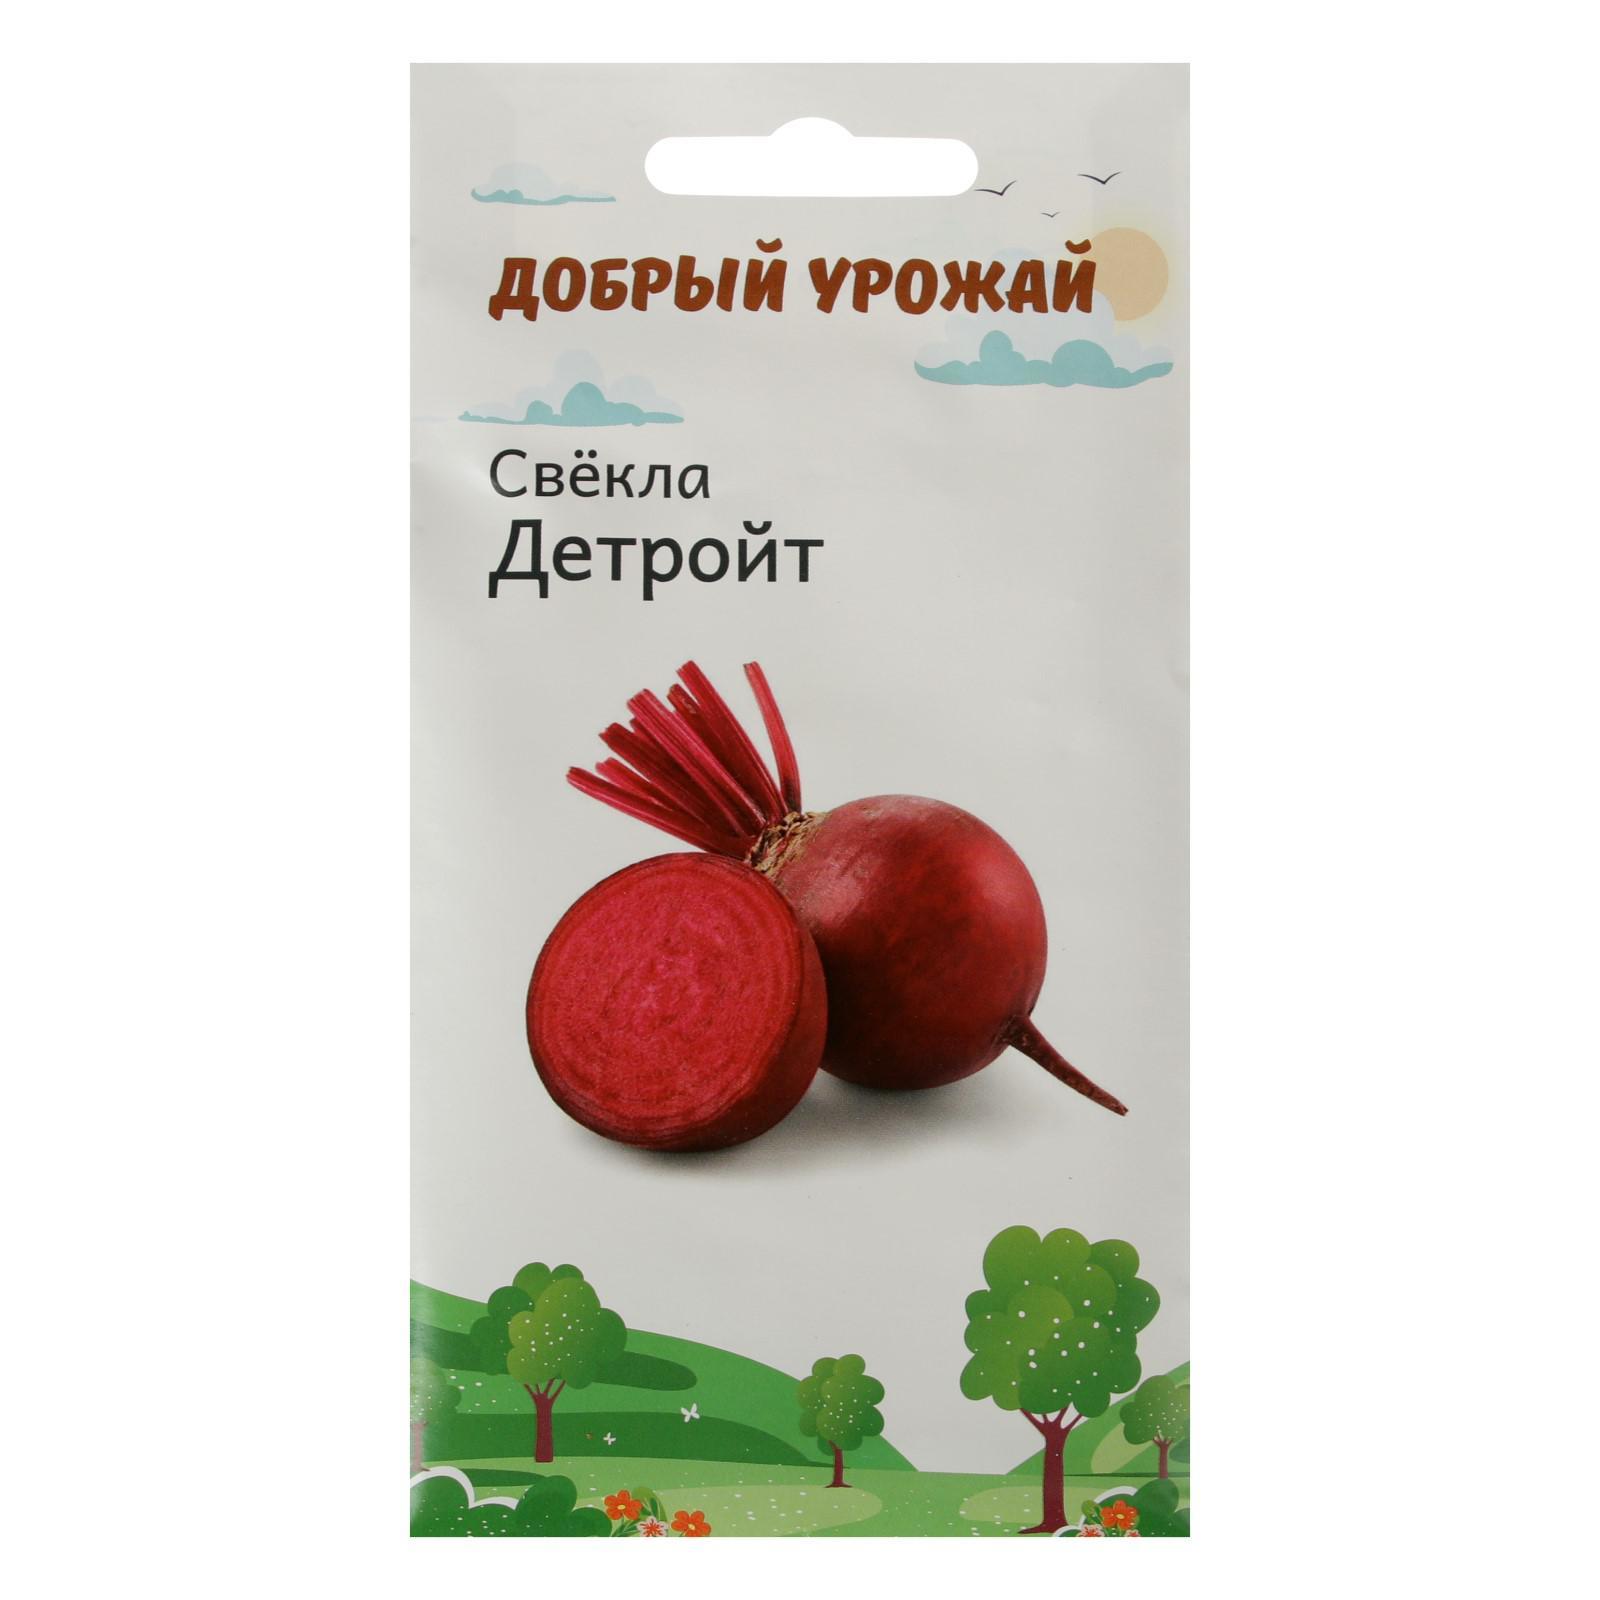 Купить Семена Свёкла Детройт 0,8 гр (6252551) в Крыму, цены, отзывы,характеристики